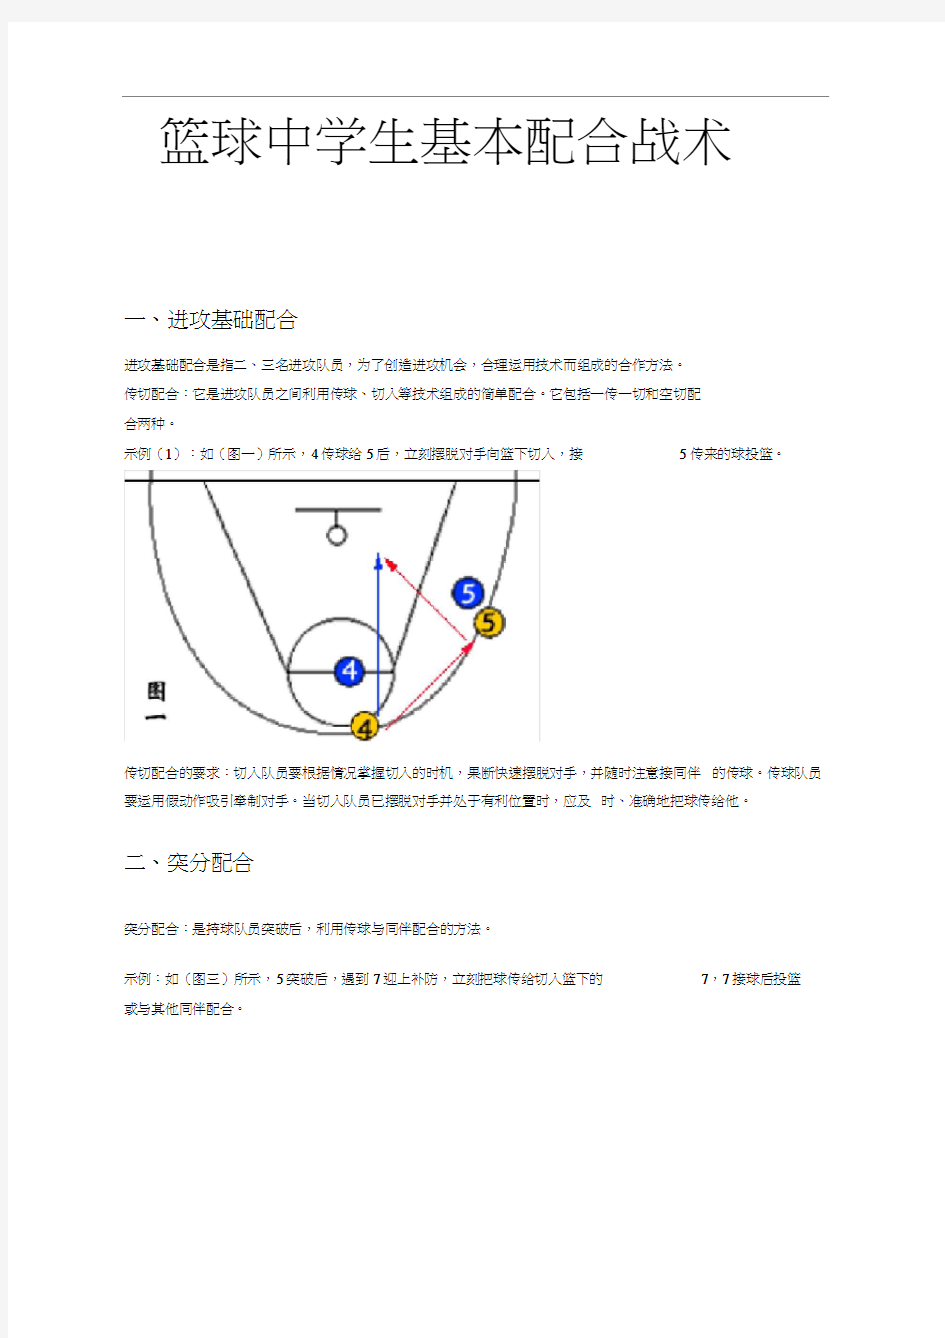 初中篮球基本战术(带图解)